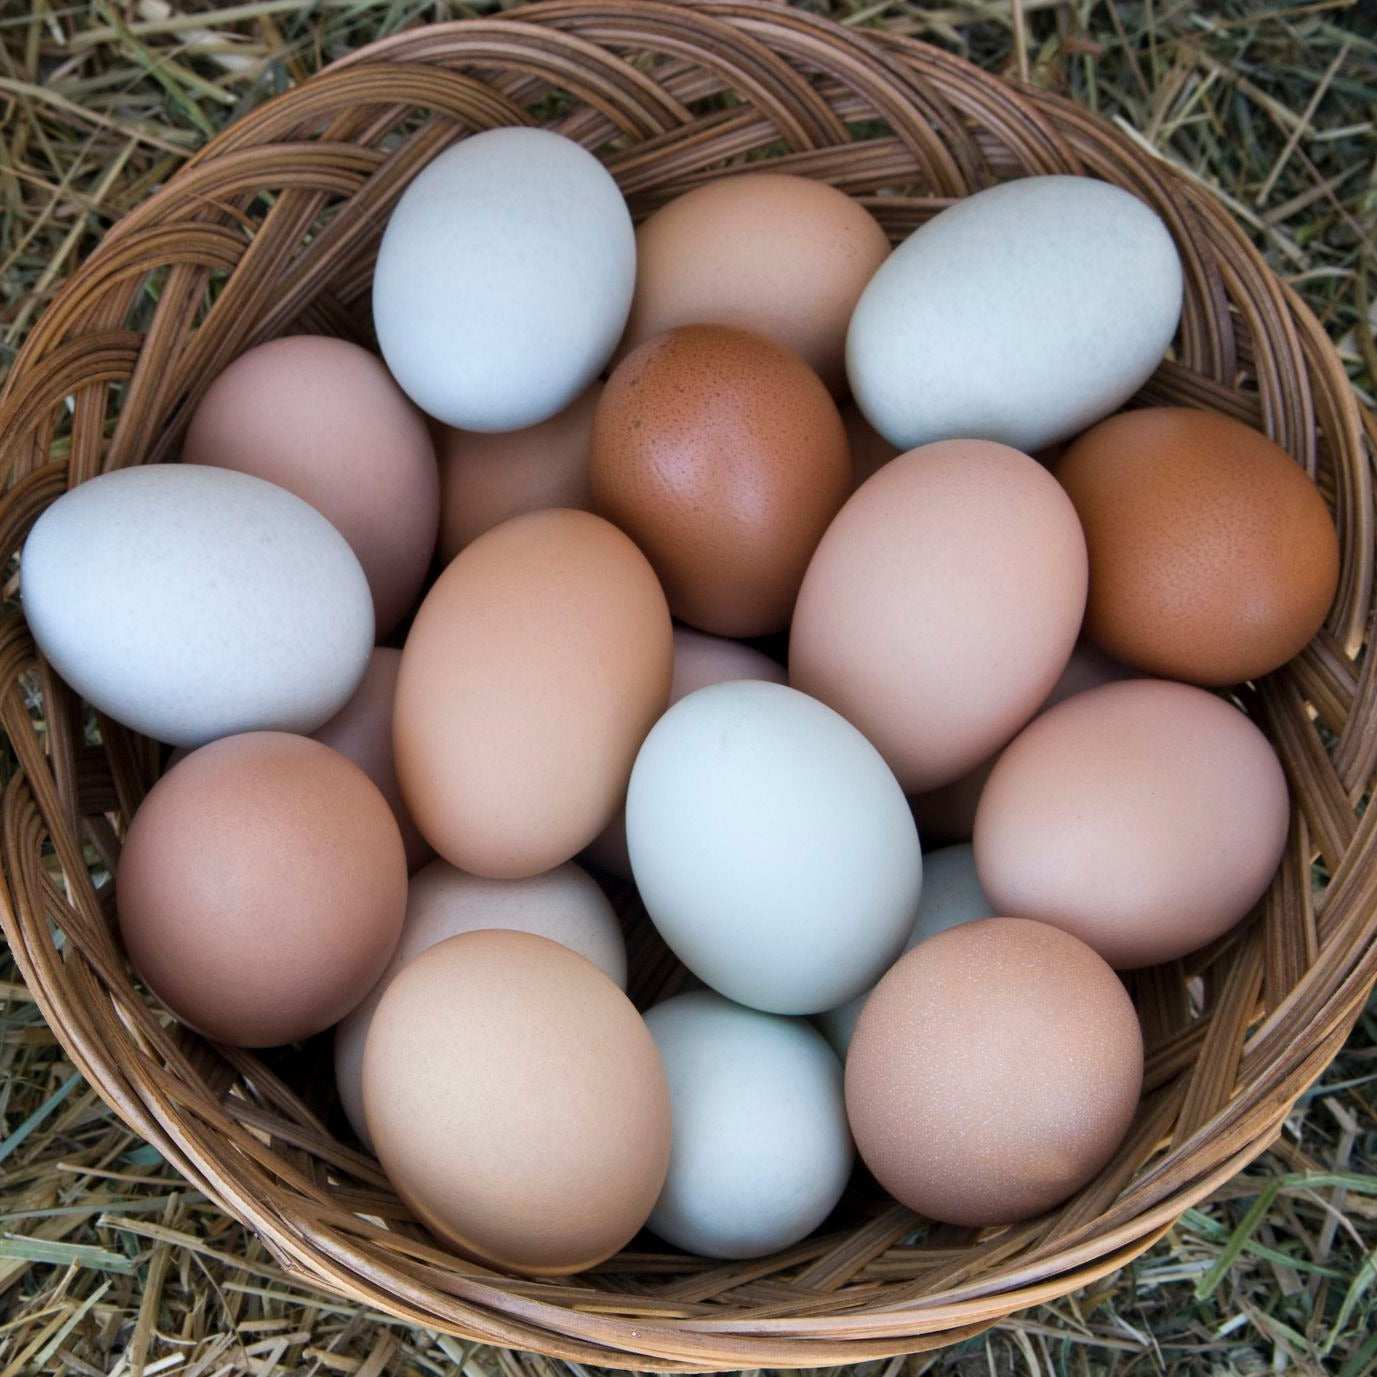 Купить яйца кур на авито. Яйцо куриное. Яйцо домашнее куриное. Яйца Деревенские. Яйца куриные Деревенские.